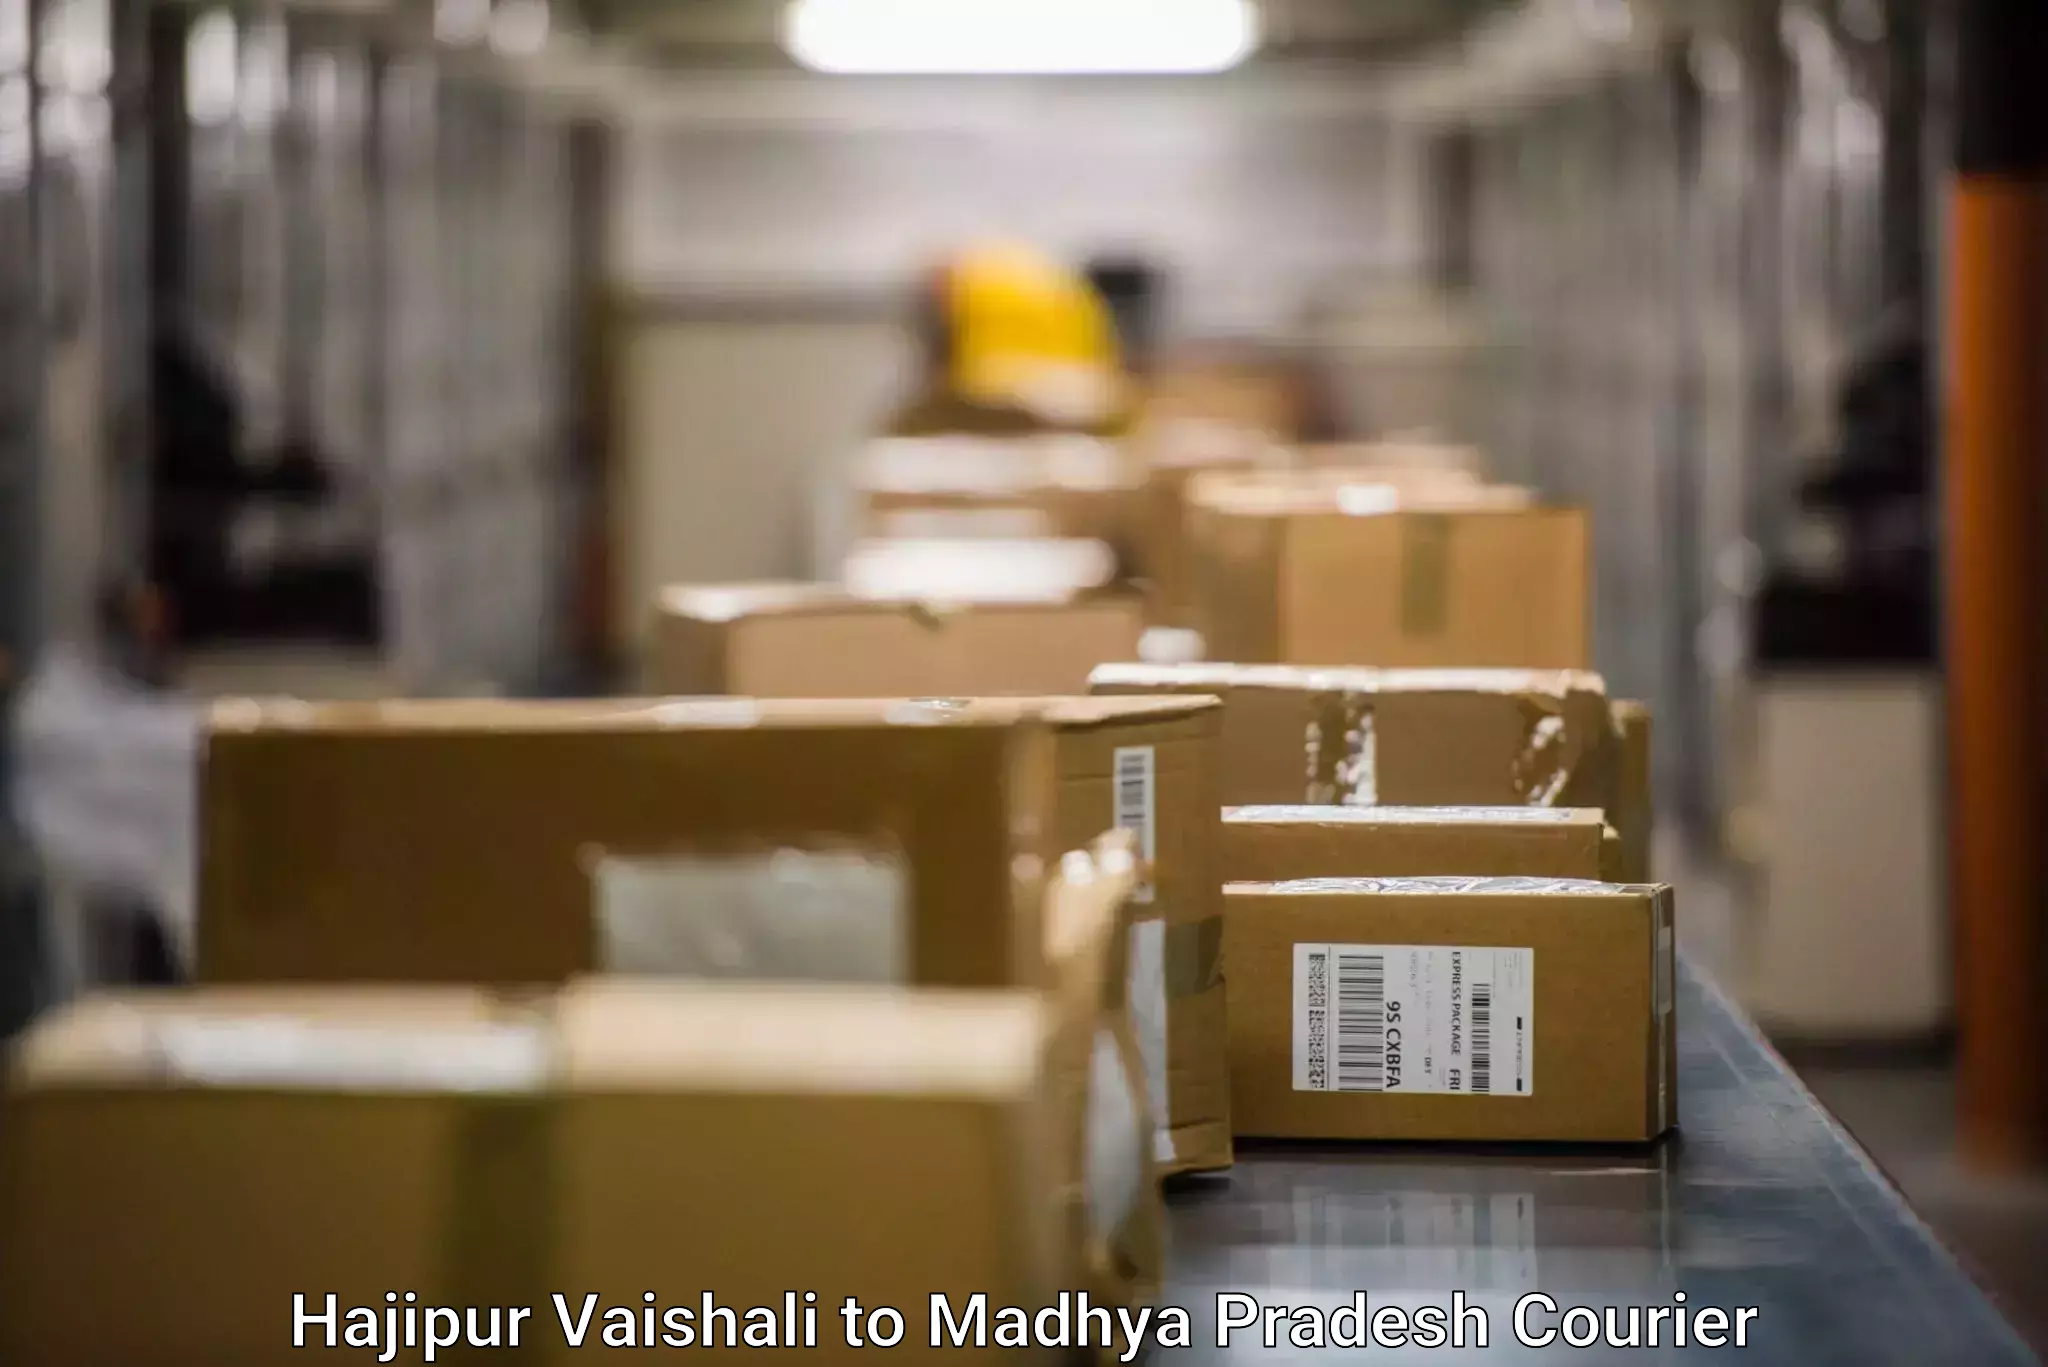 Reliable logistics providers Hajipur Vaishali to Sendhwa